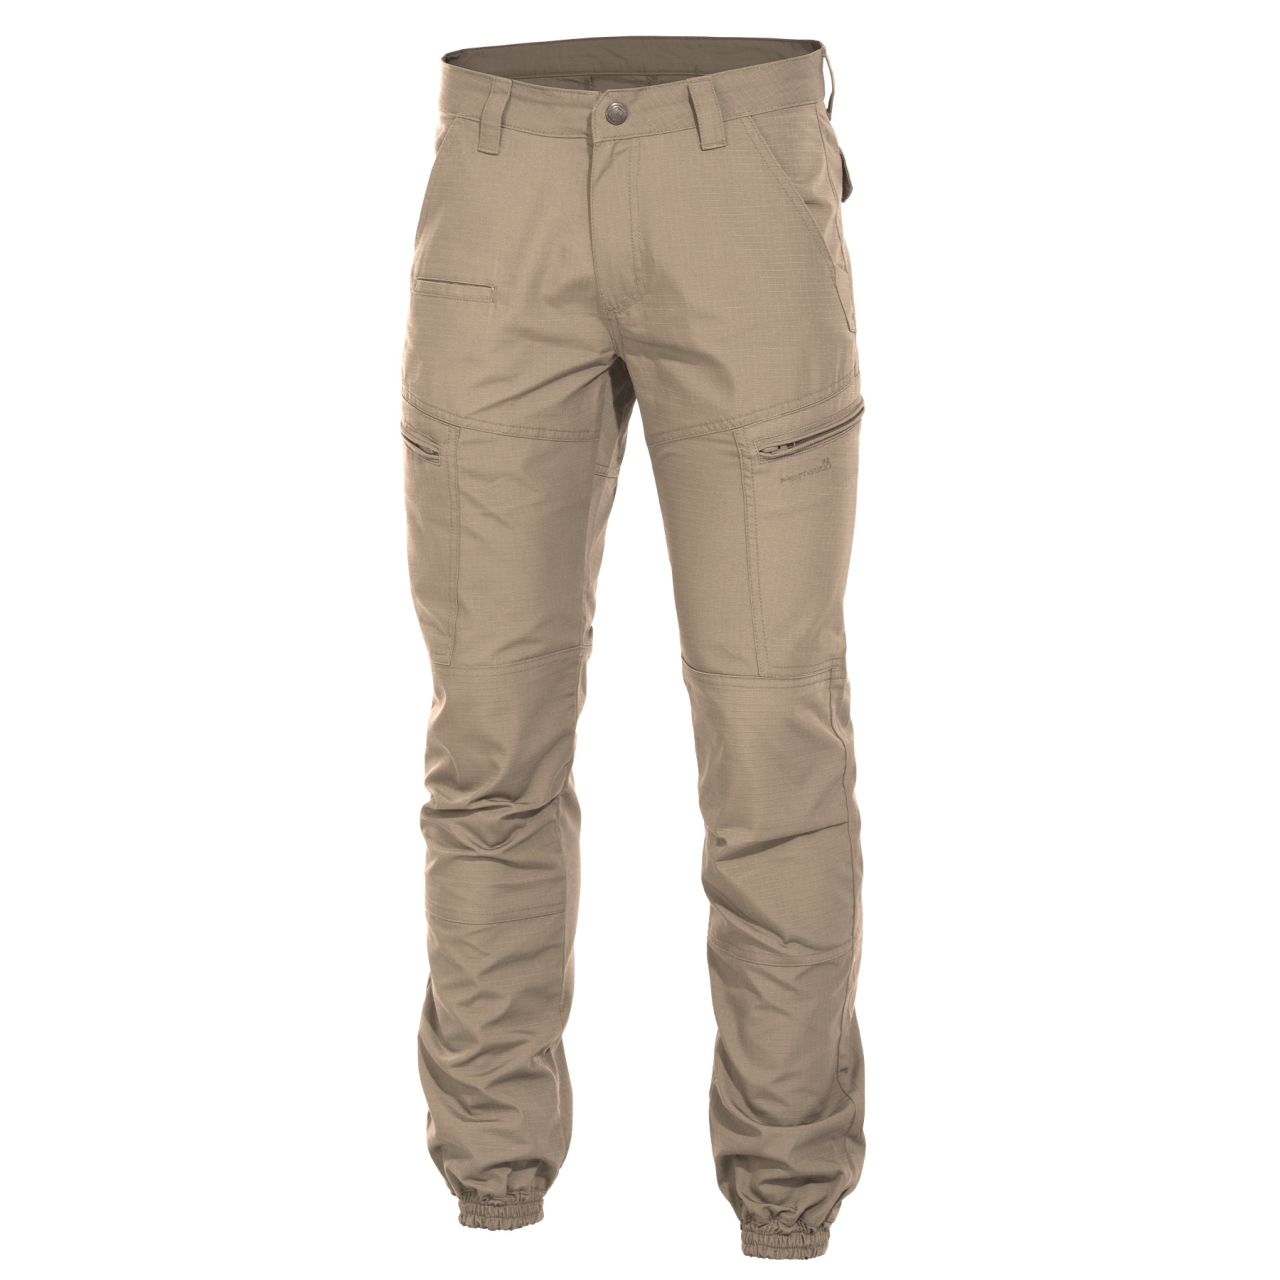 Kalhoty Pentagon Ypero - béžové, 56 XL